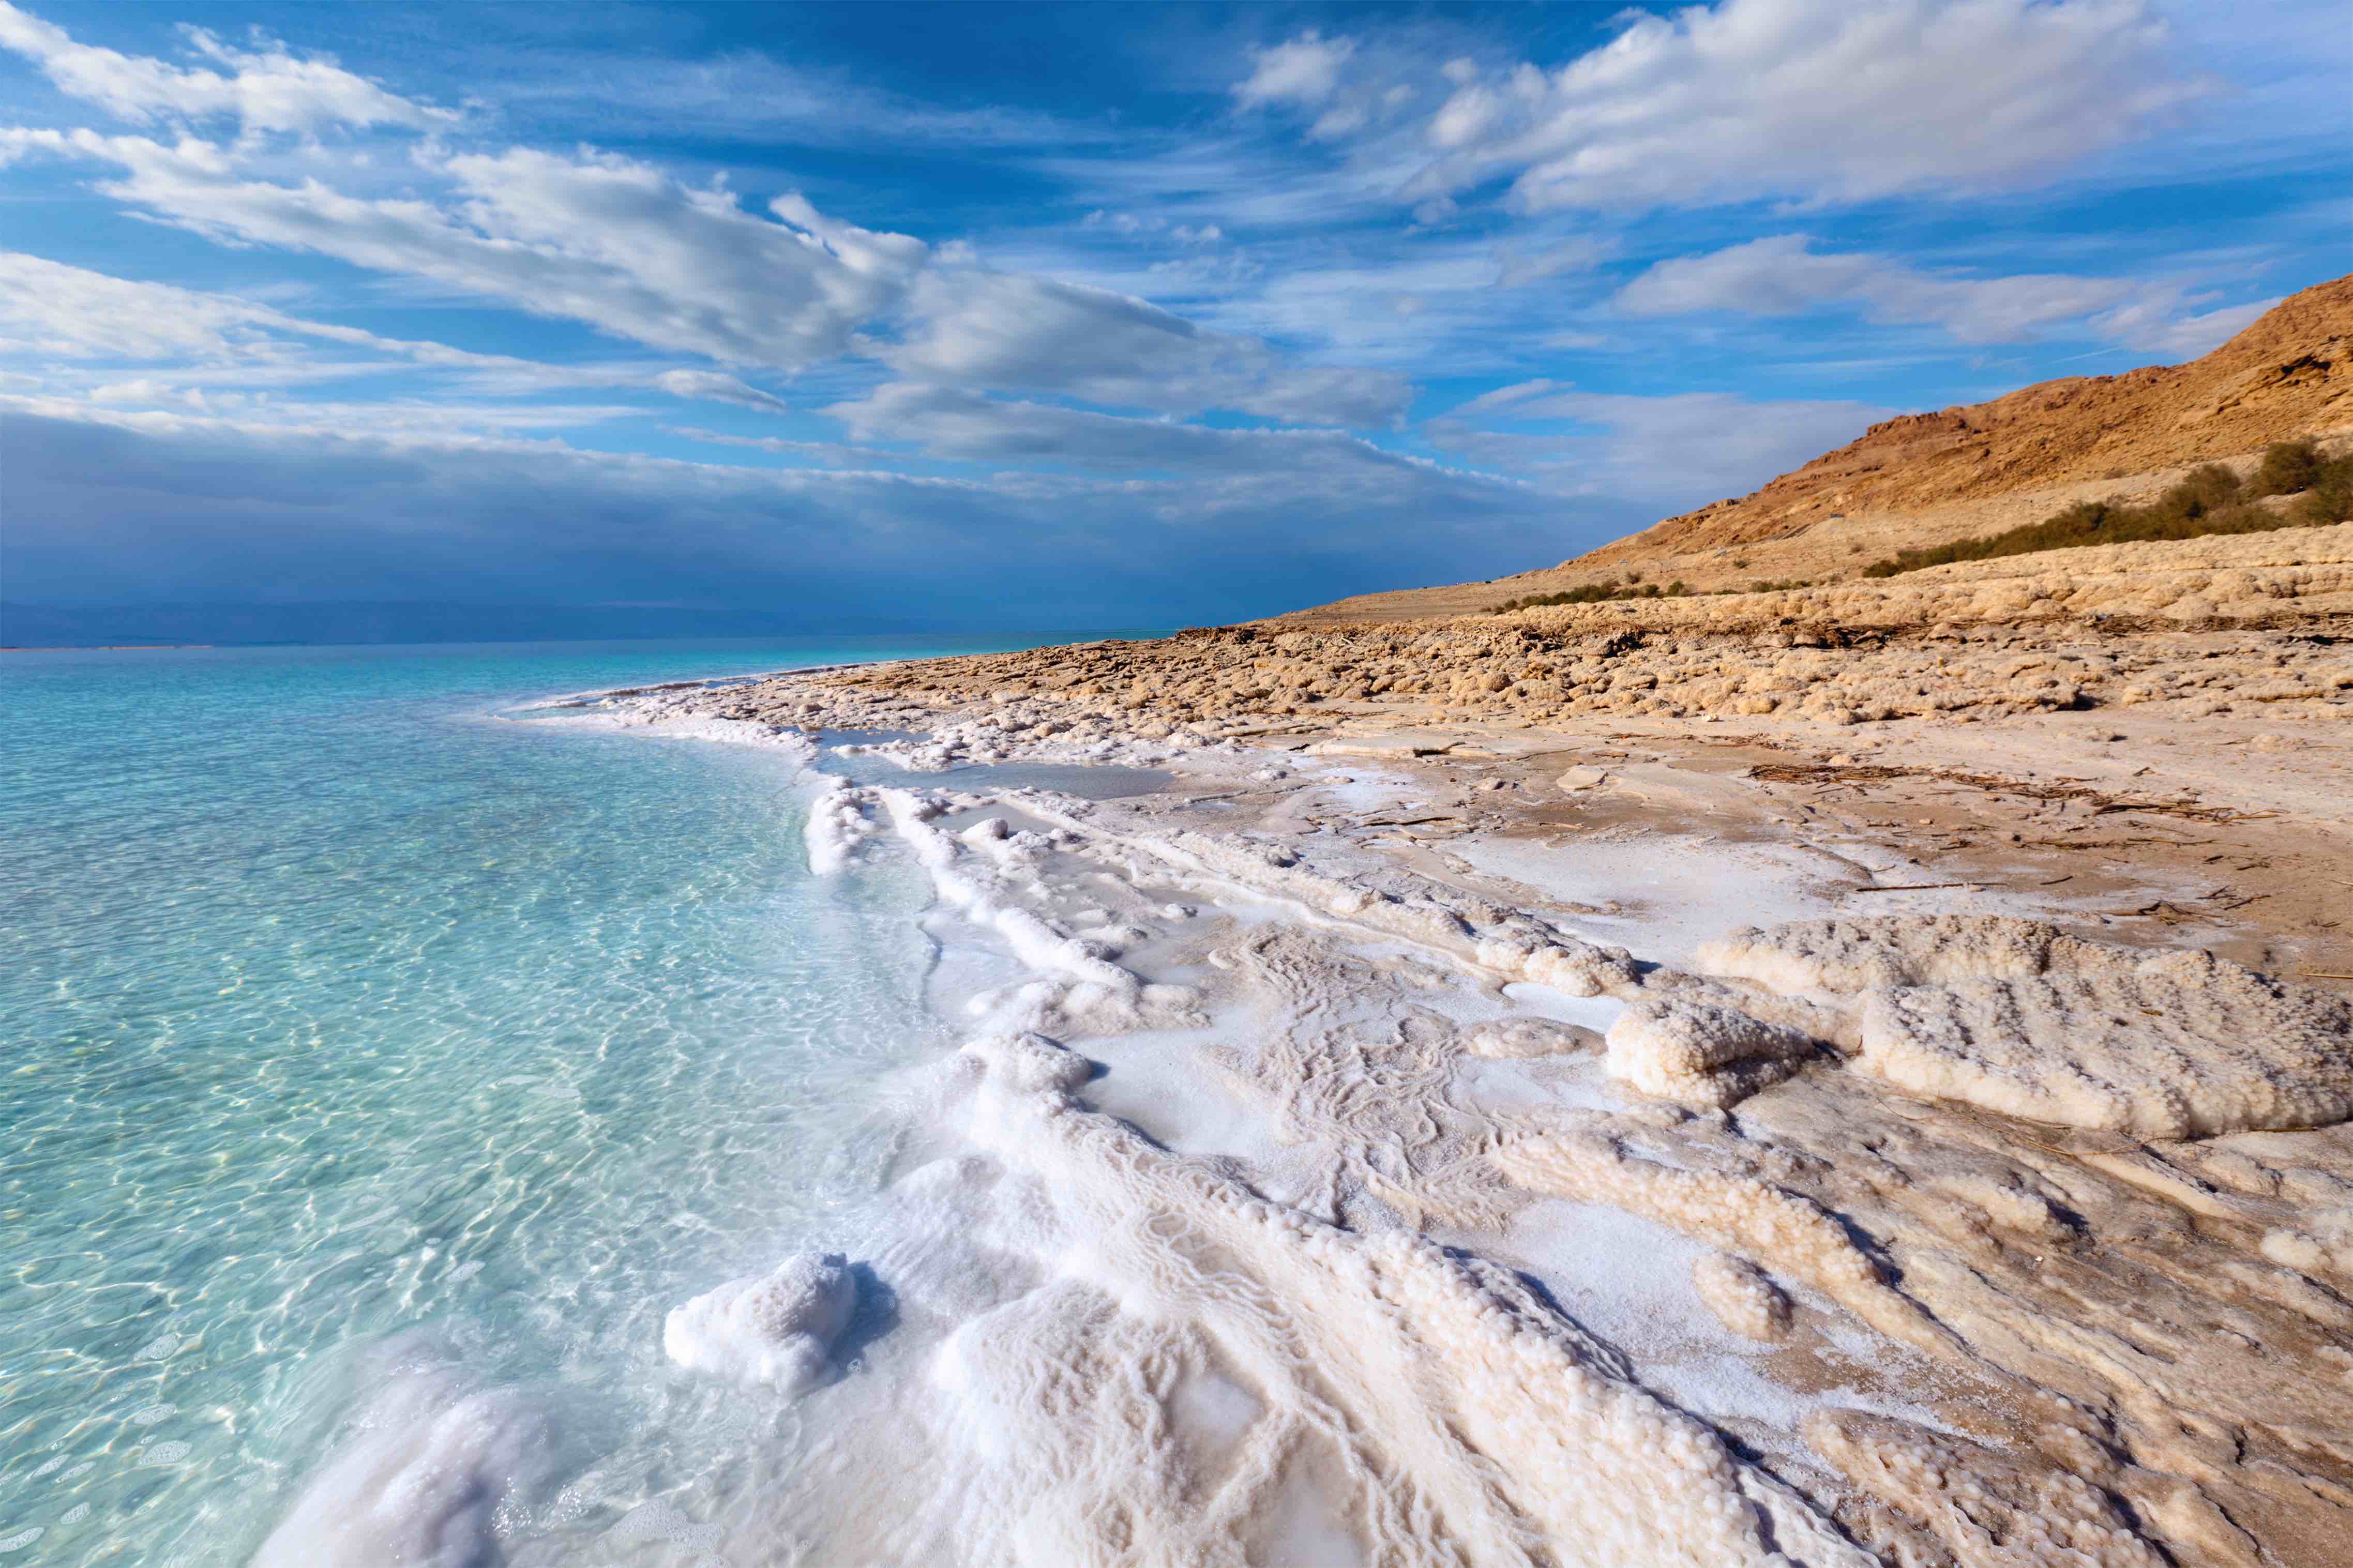 Индийский океан соленый. Мертвое море (Dead Sea).